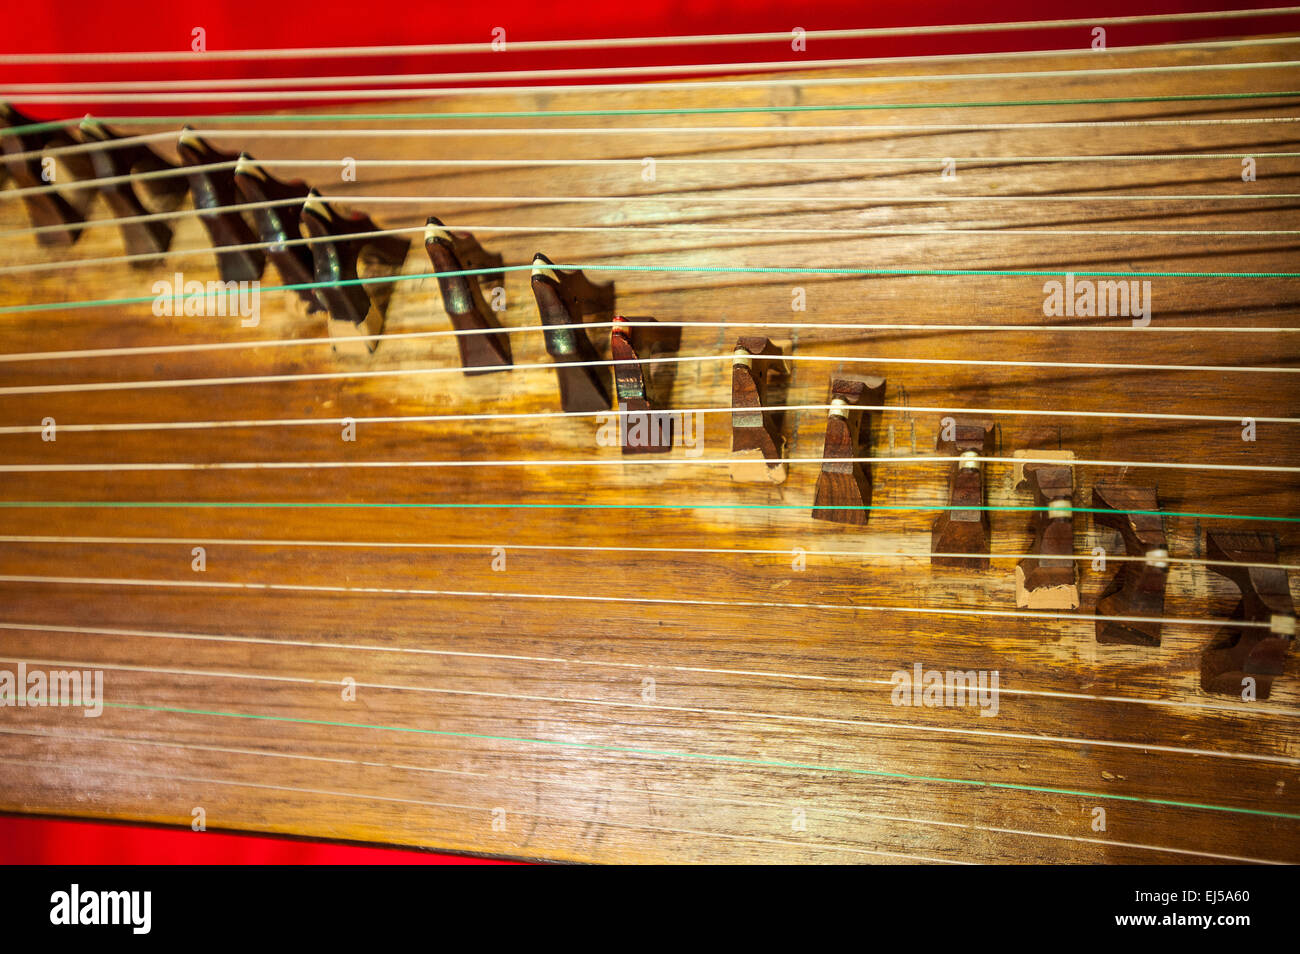 Turin, Italien. 20. März 2015. Lingotto fair "Festival dell'Oriente" vom 20. bis 22. März 2015 und vom 27. bis 30. März 2015 20. März 2015-mongolische Musikinstrumente - Morin Khuur Credit: wirklich Easy Star/Alamy Live News Stockfoto